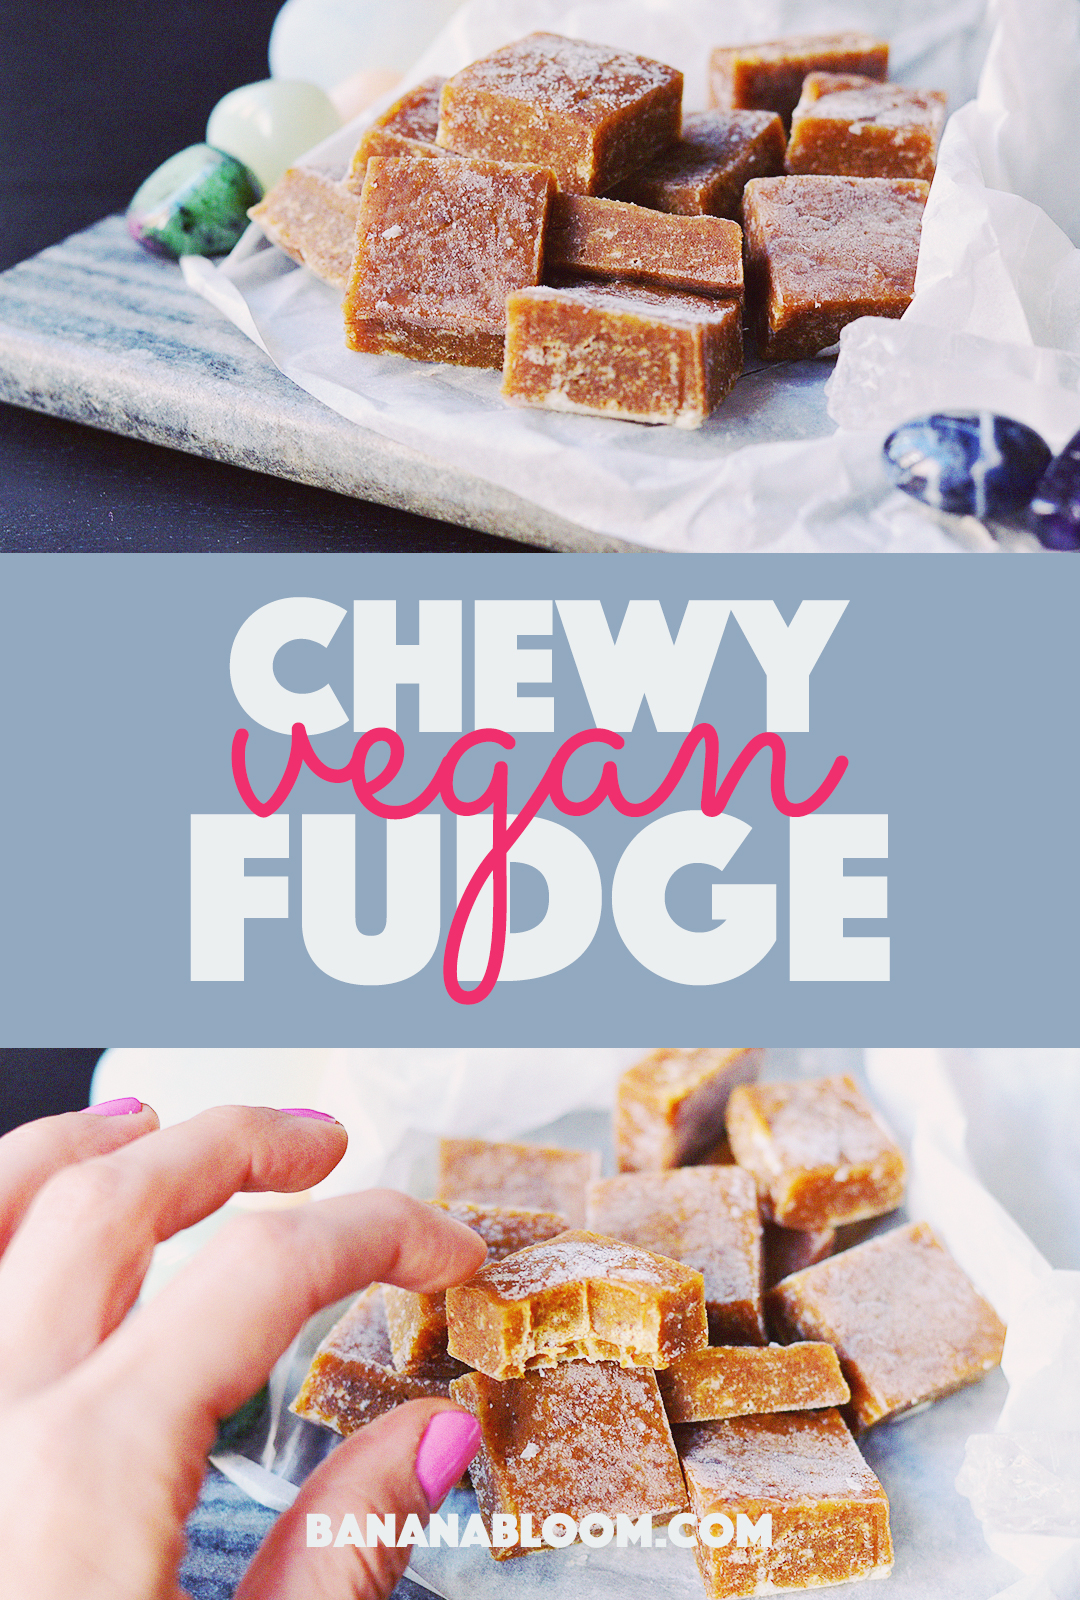 Chewy Vegan Fudge | http://BananaBloom.com #vegan #baking #fudge #recipe